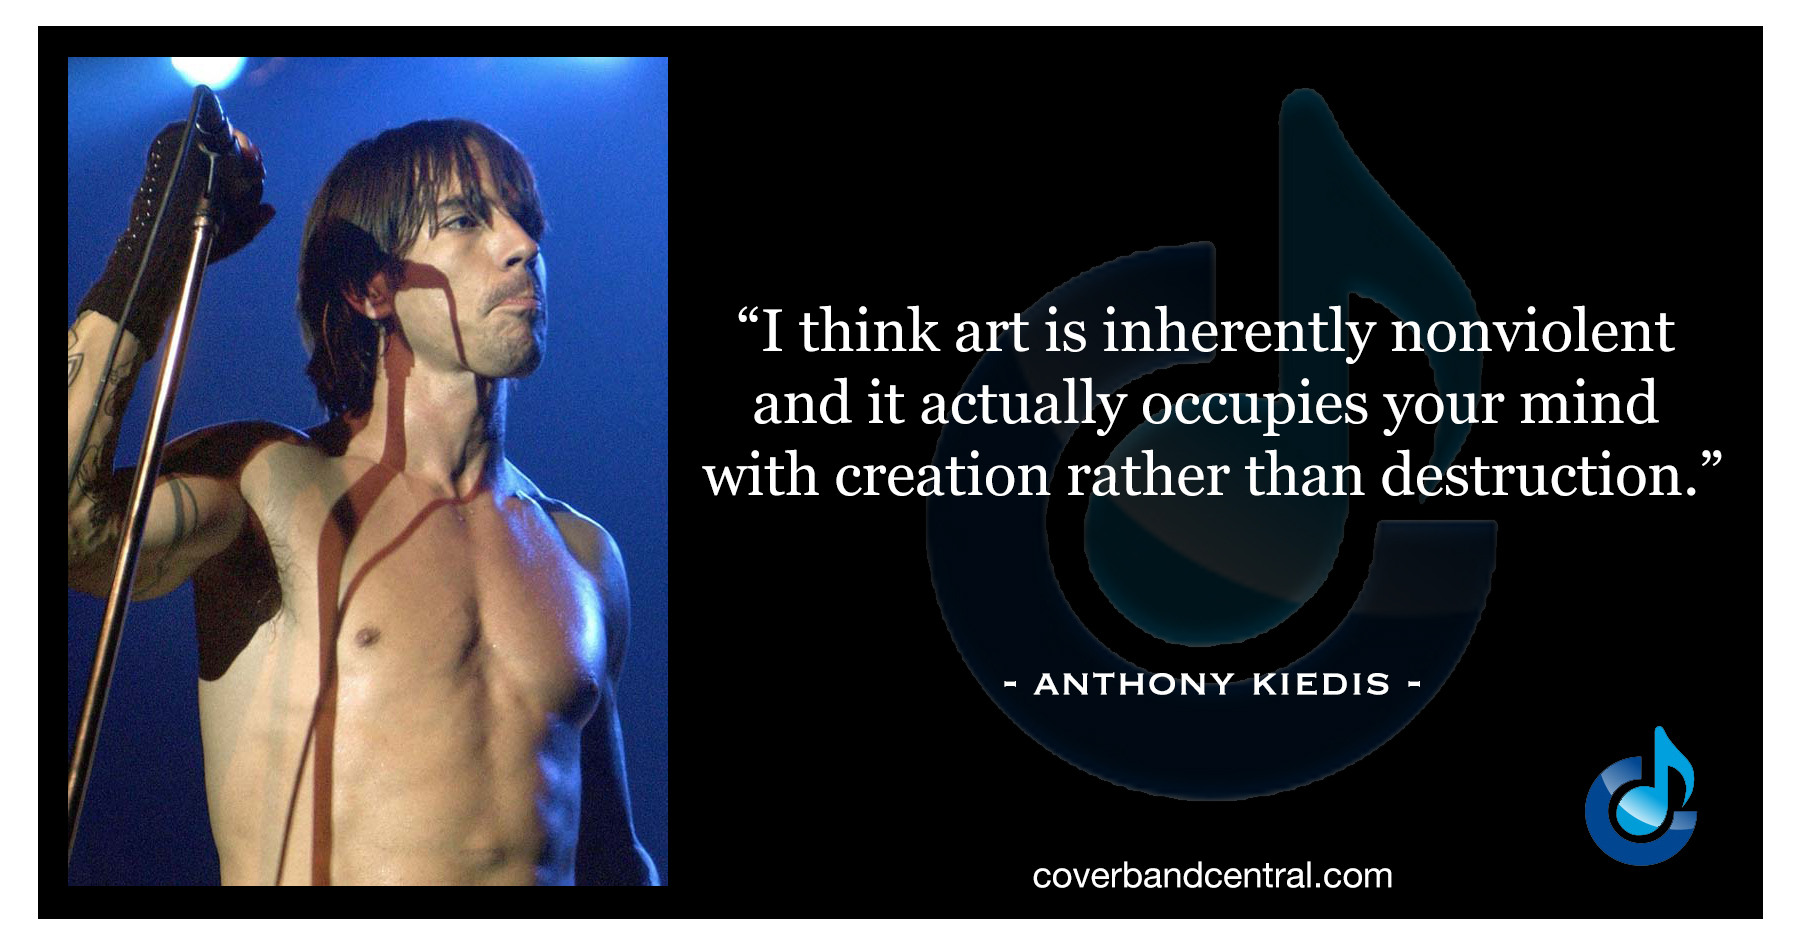 Anthony Kiedis quote